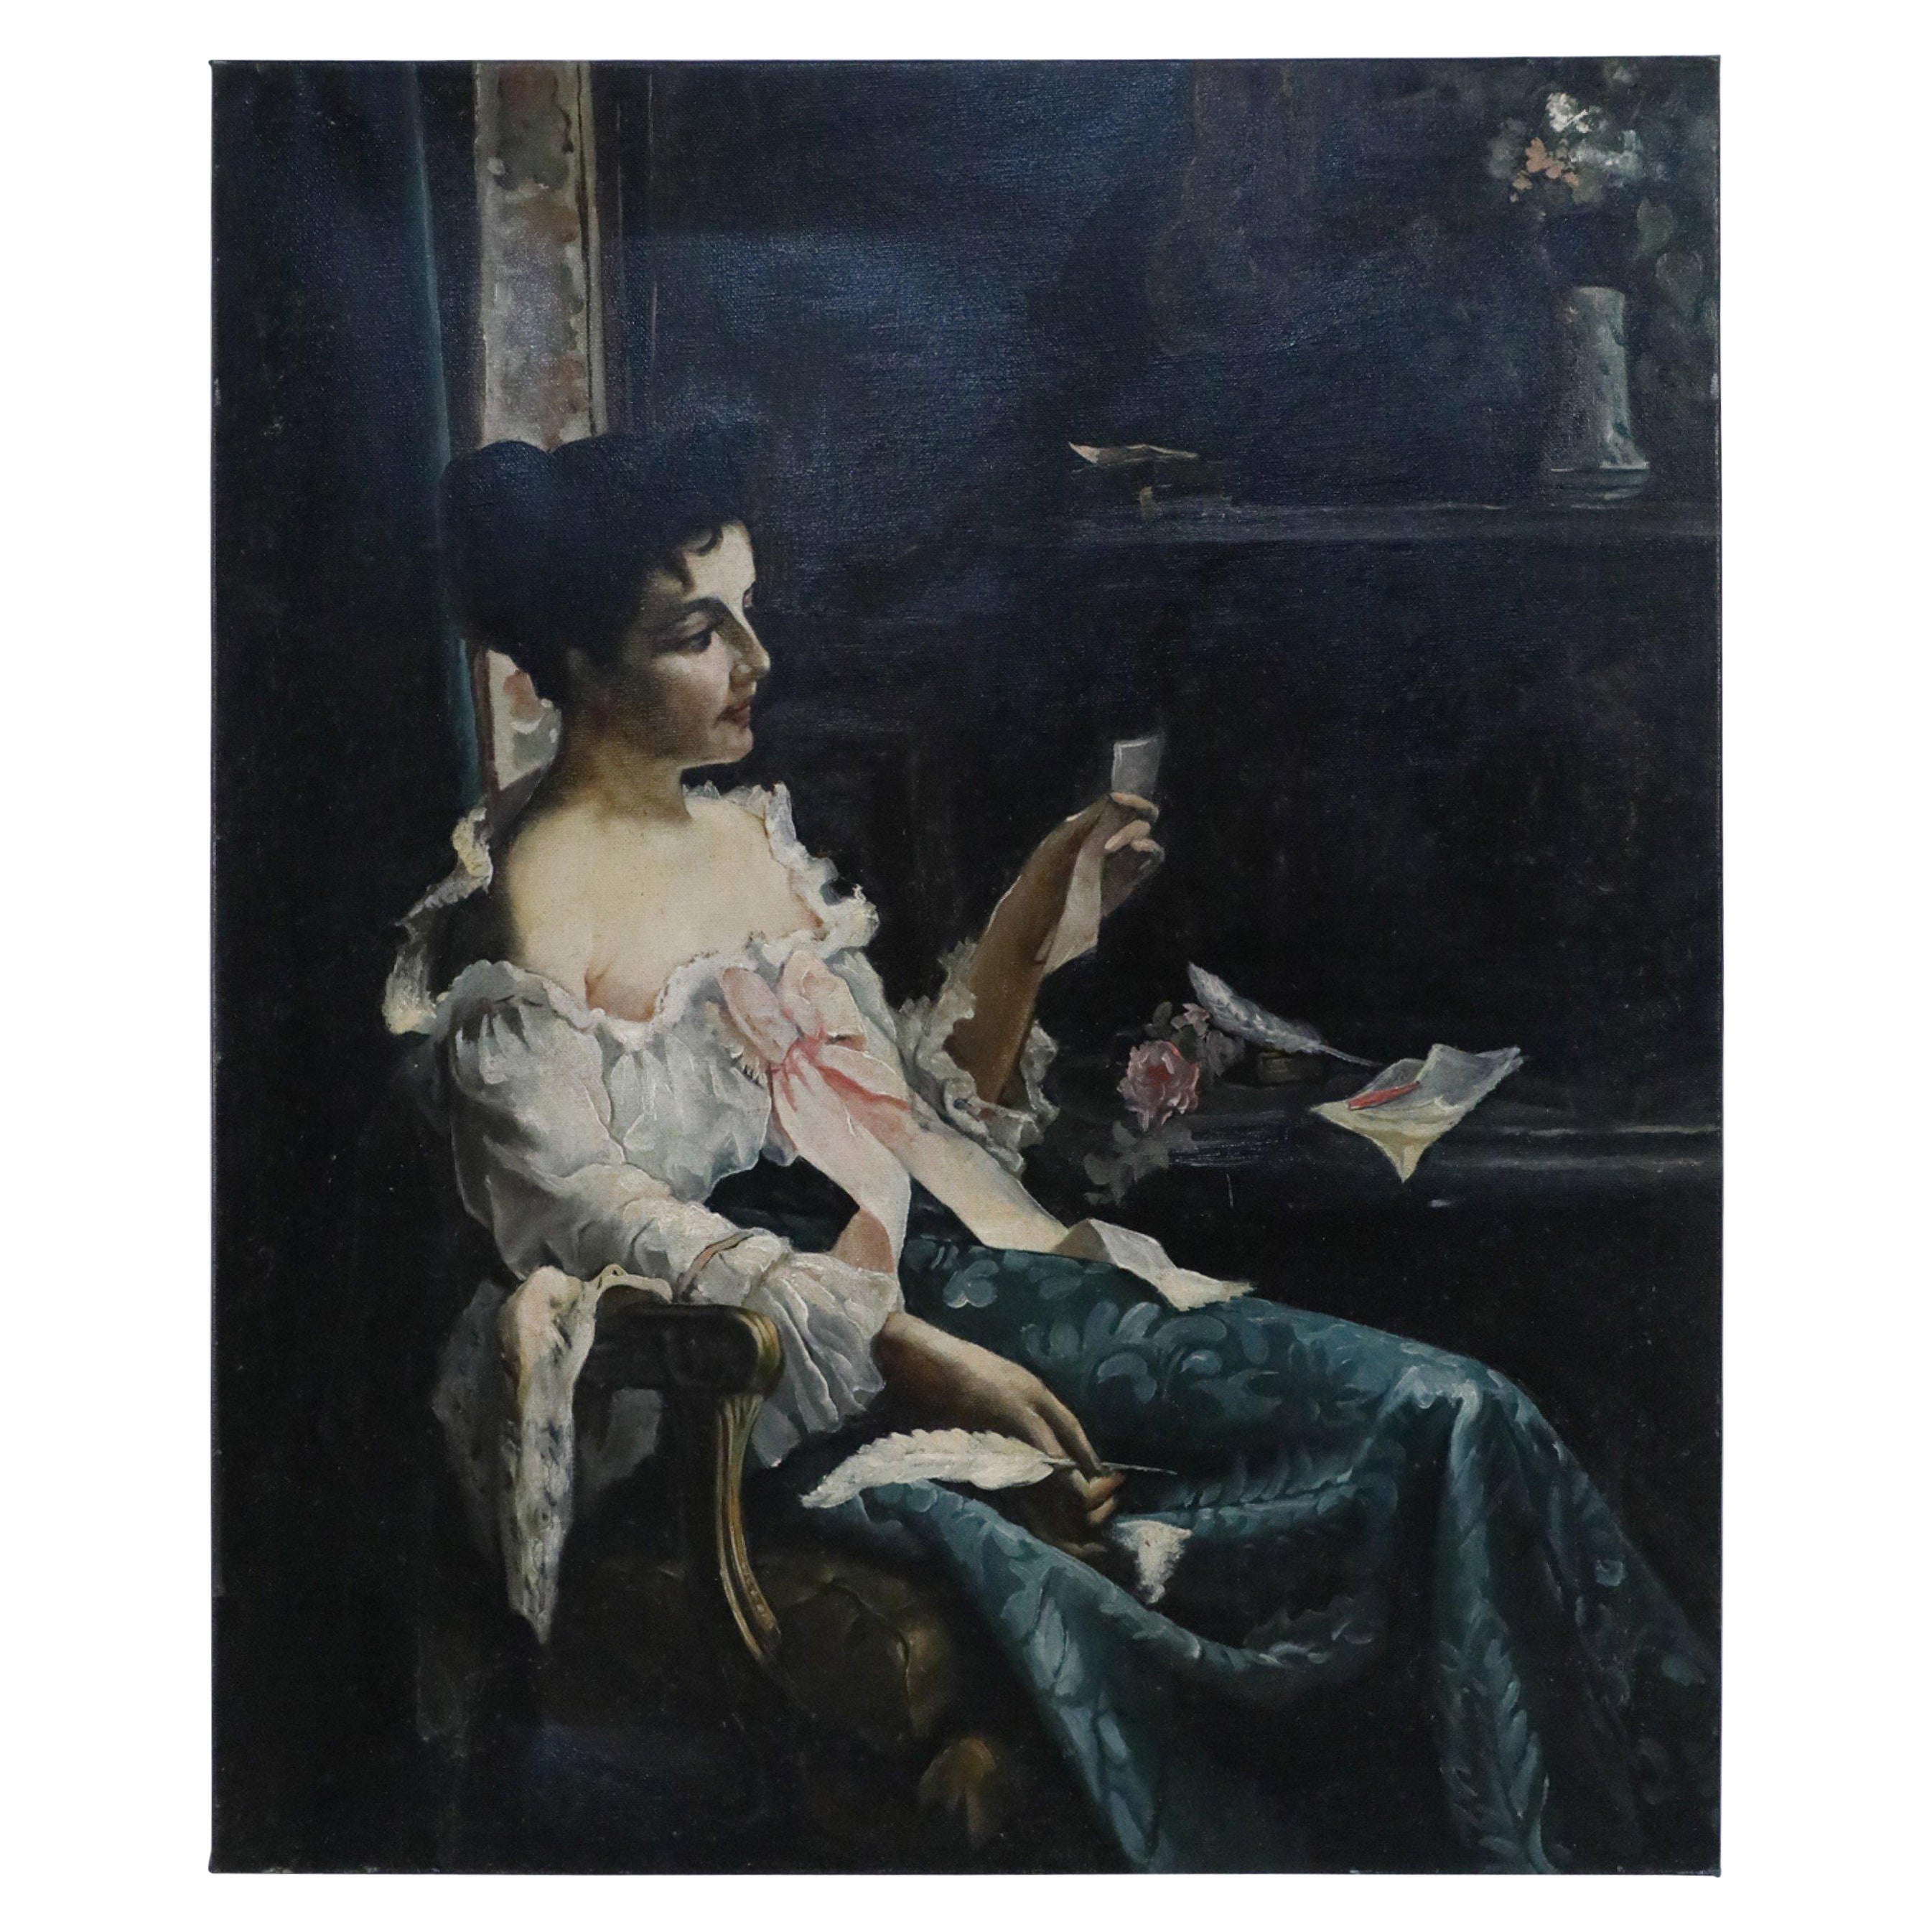 Vintage Victorian Woman at Desk Oil Painting on Canvas (Femme victorienne au bureau)